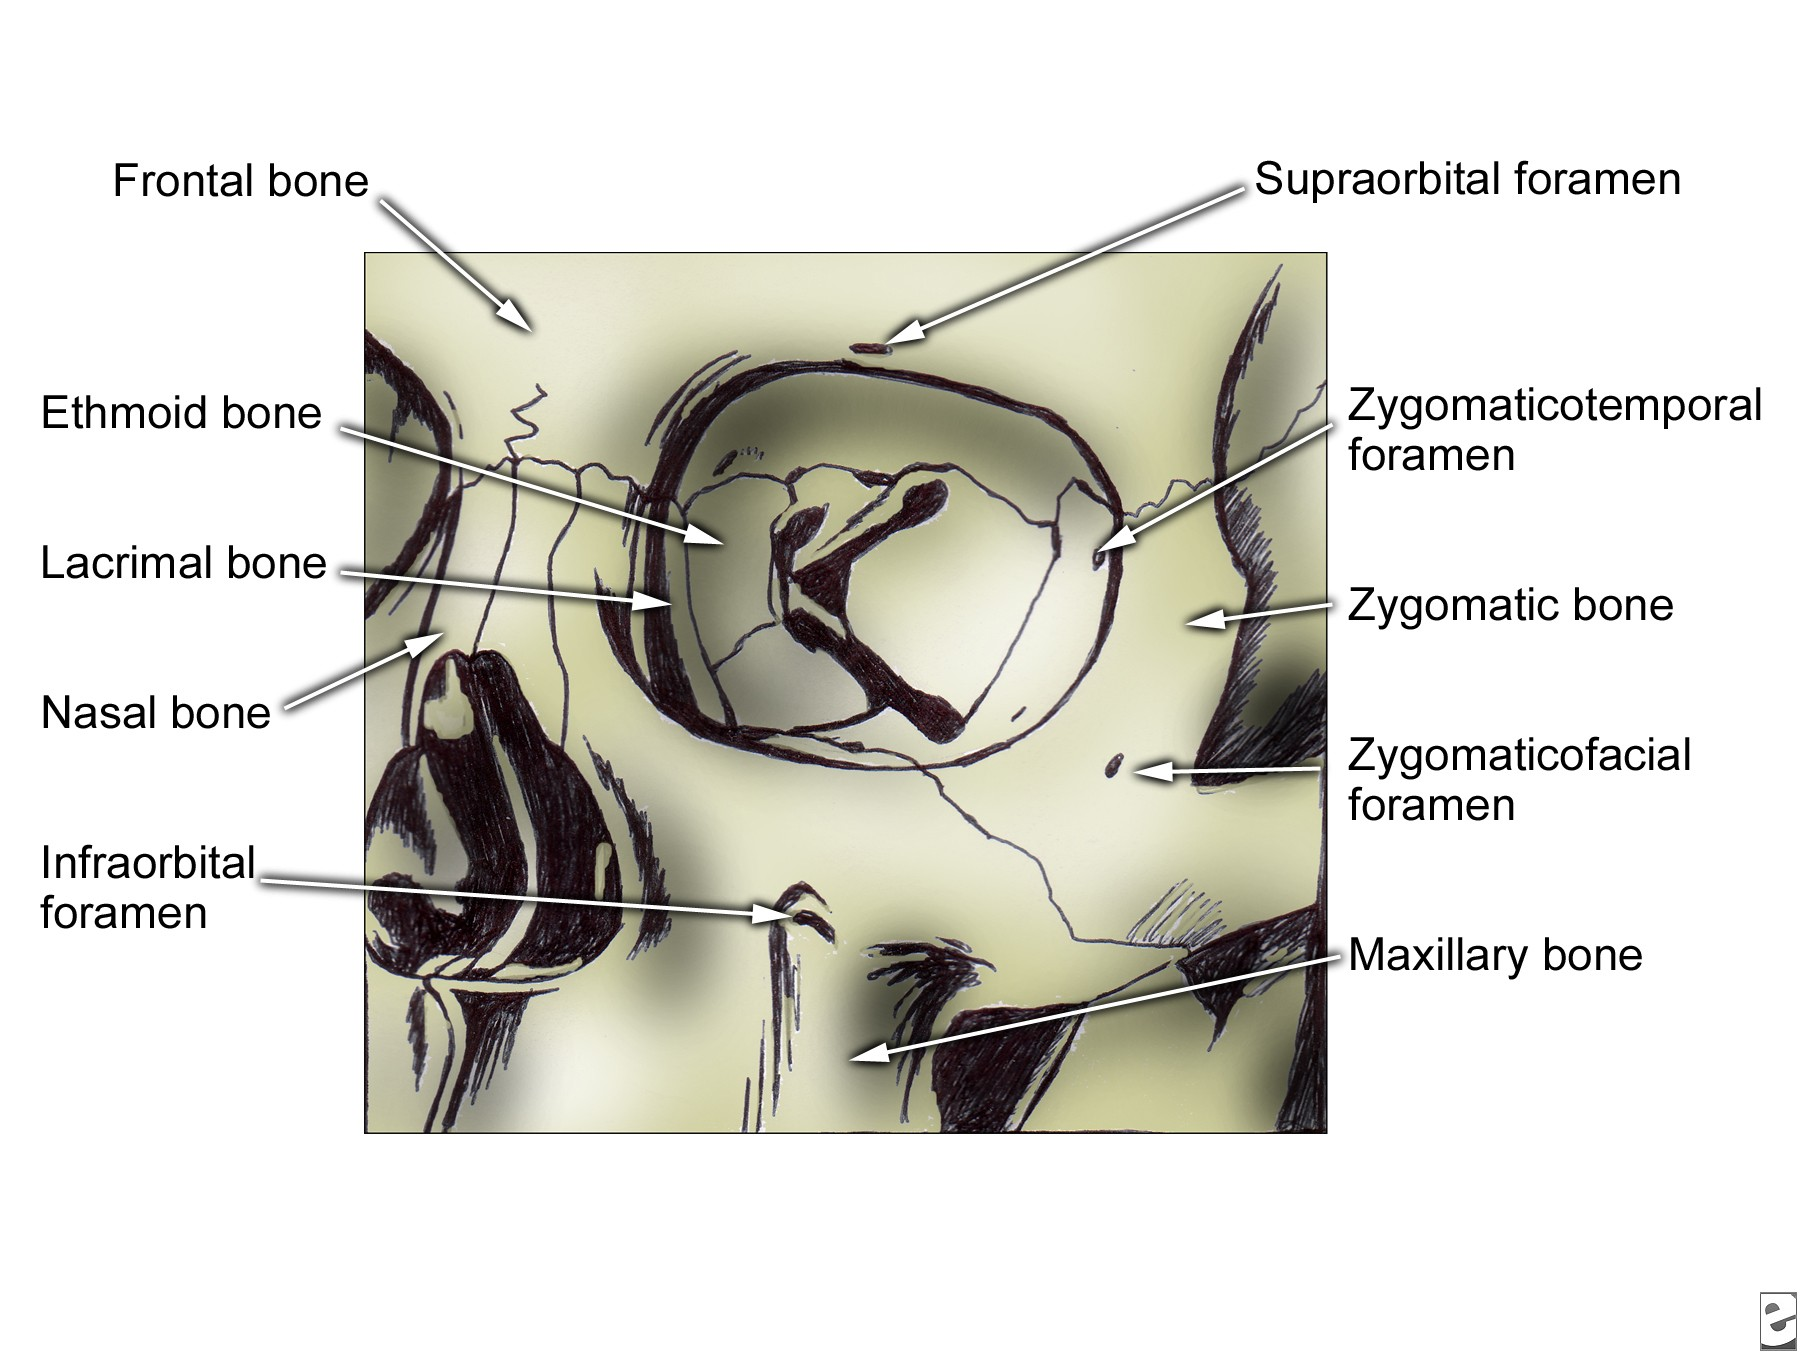 arah lateral. Tulang zigoma membentuk bagian lateral dinding inferior orbital, serta dinding lateral orbital.